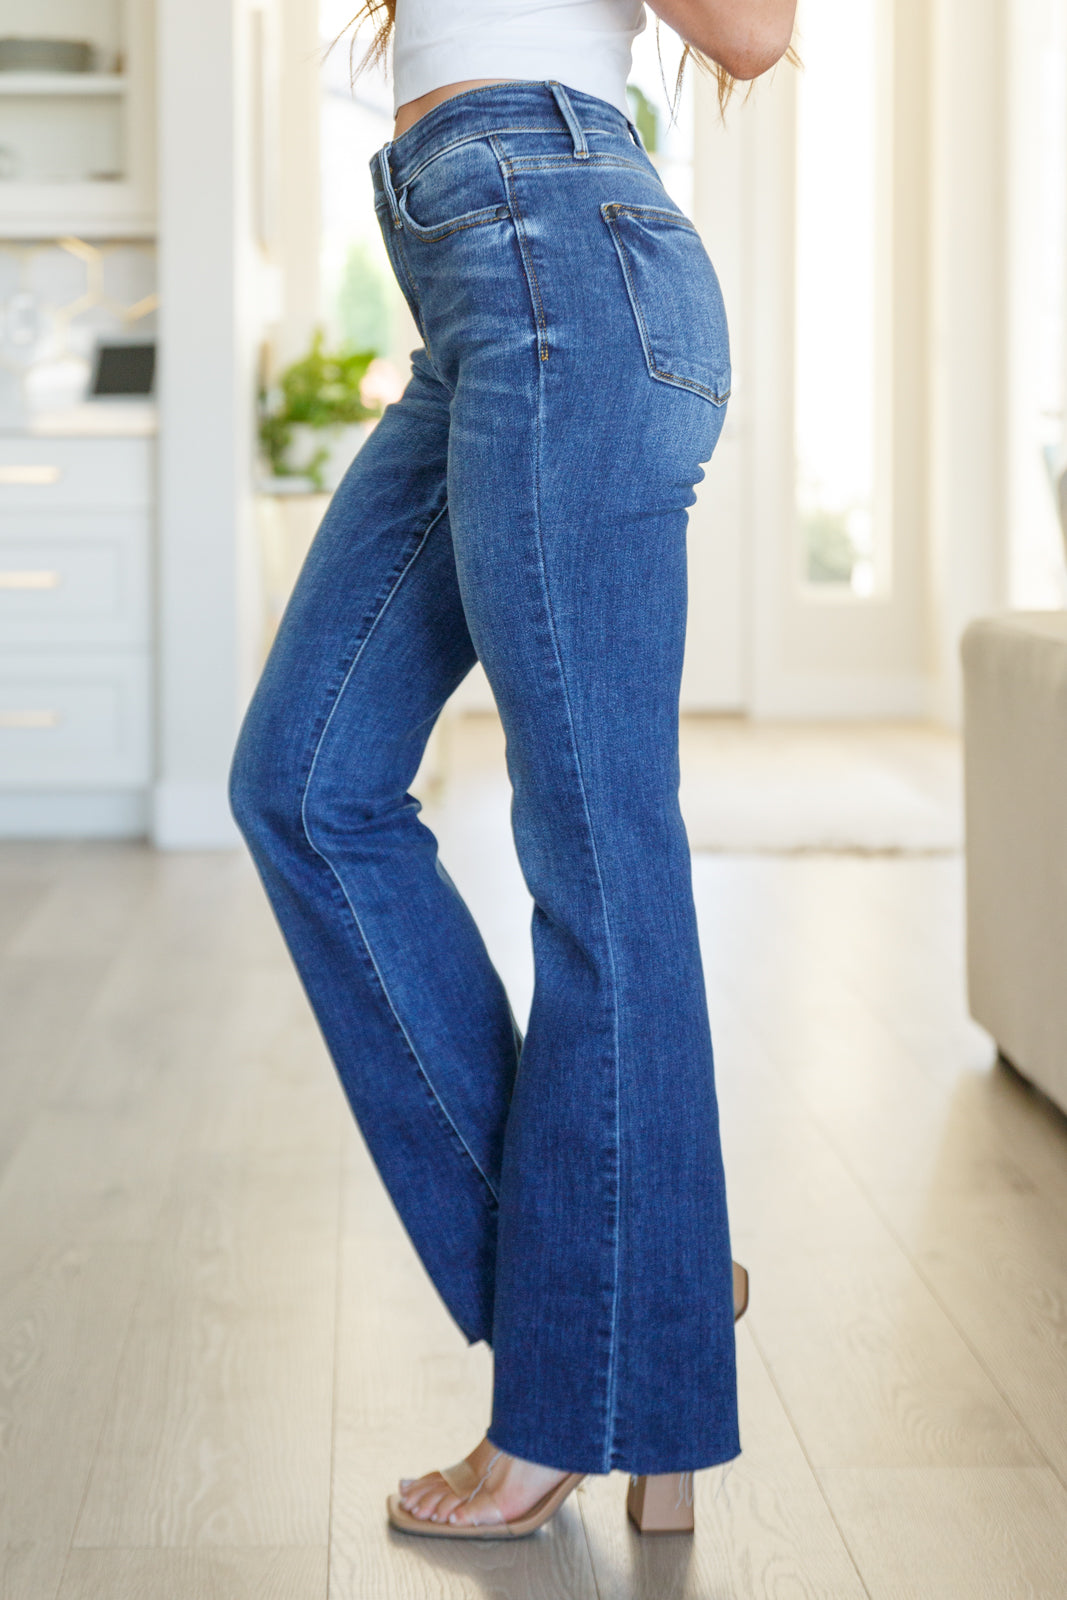 Josephine Mid Rise Raw Hem Bootcut Jeans - Southern Divas Boutique